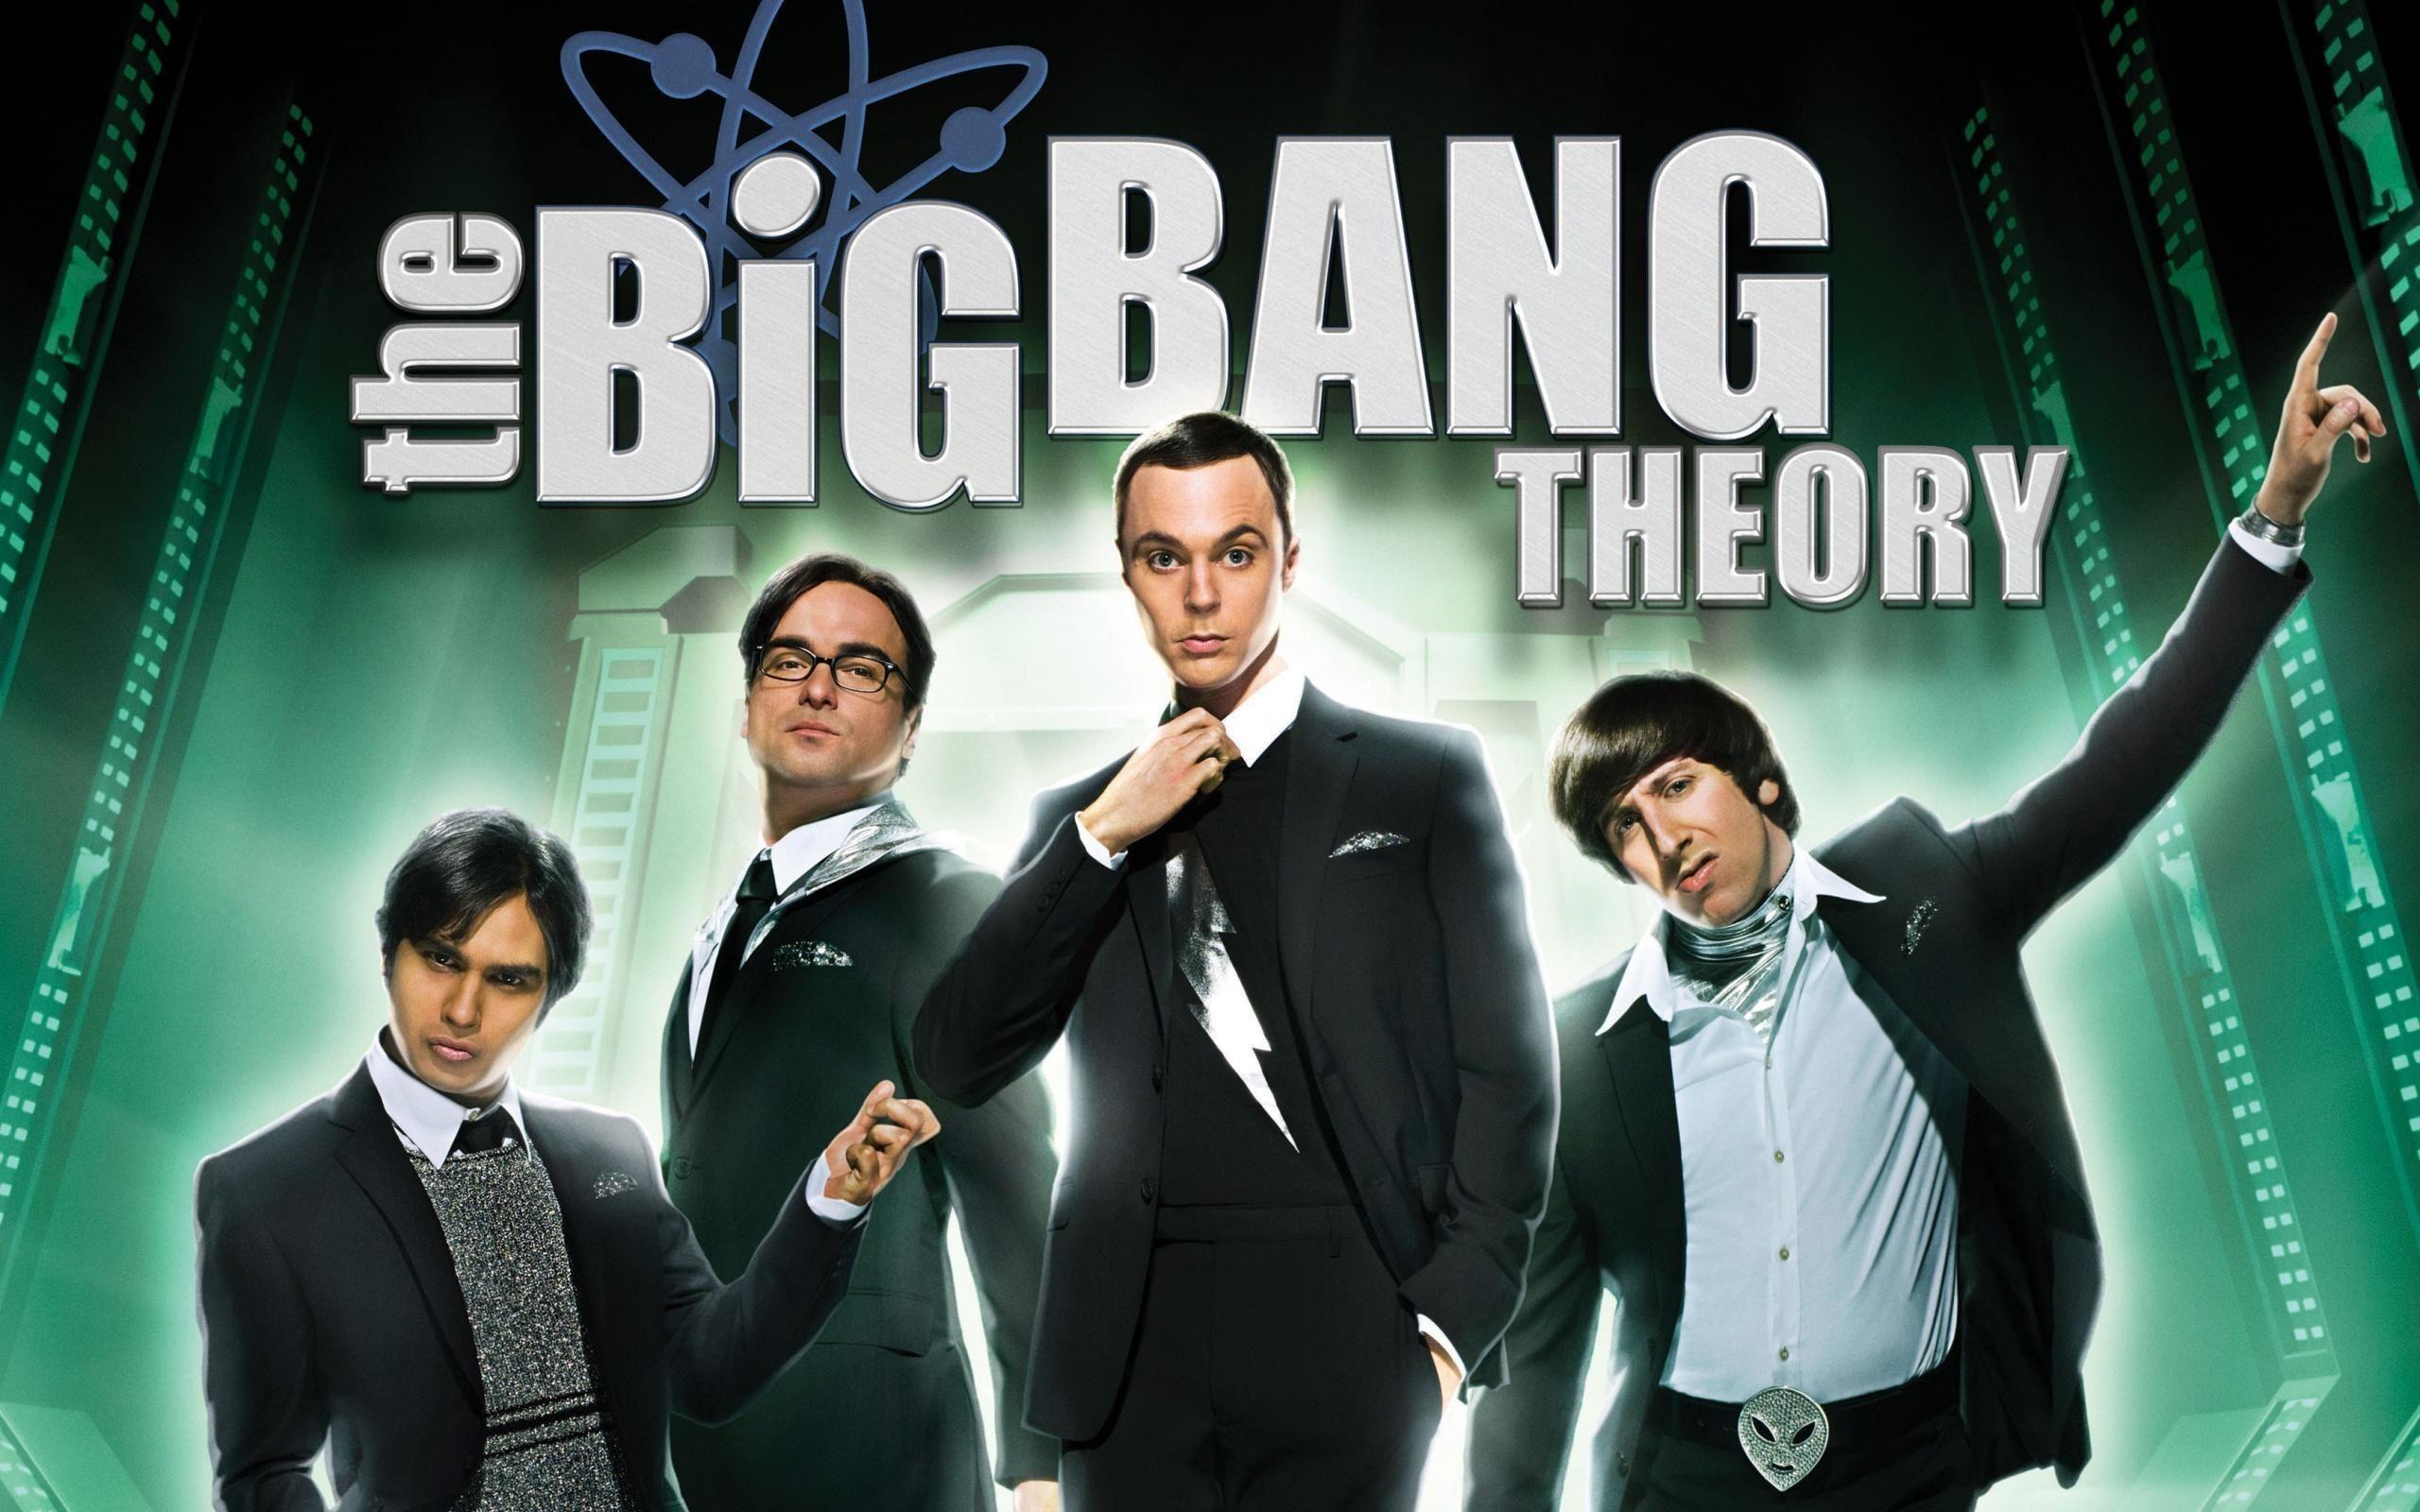 The Big Bang Theory 2K Wallpapers